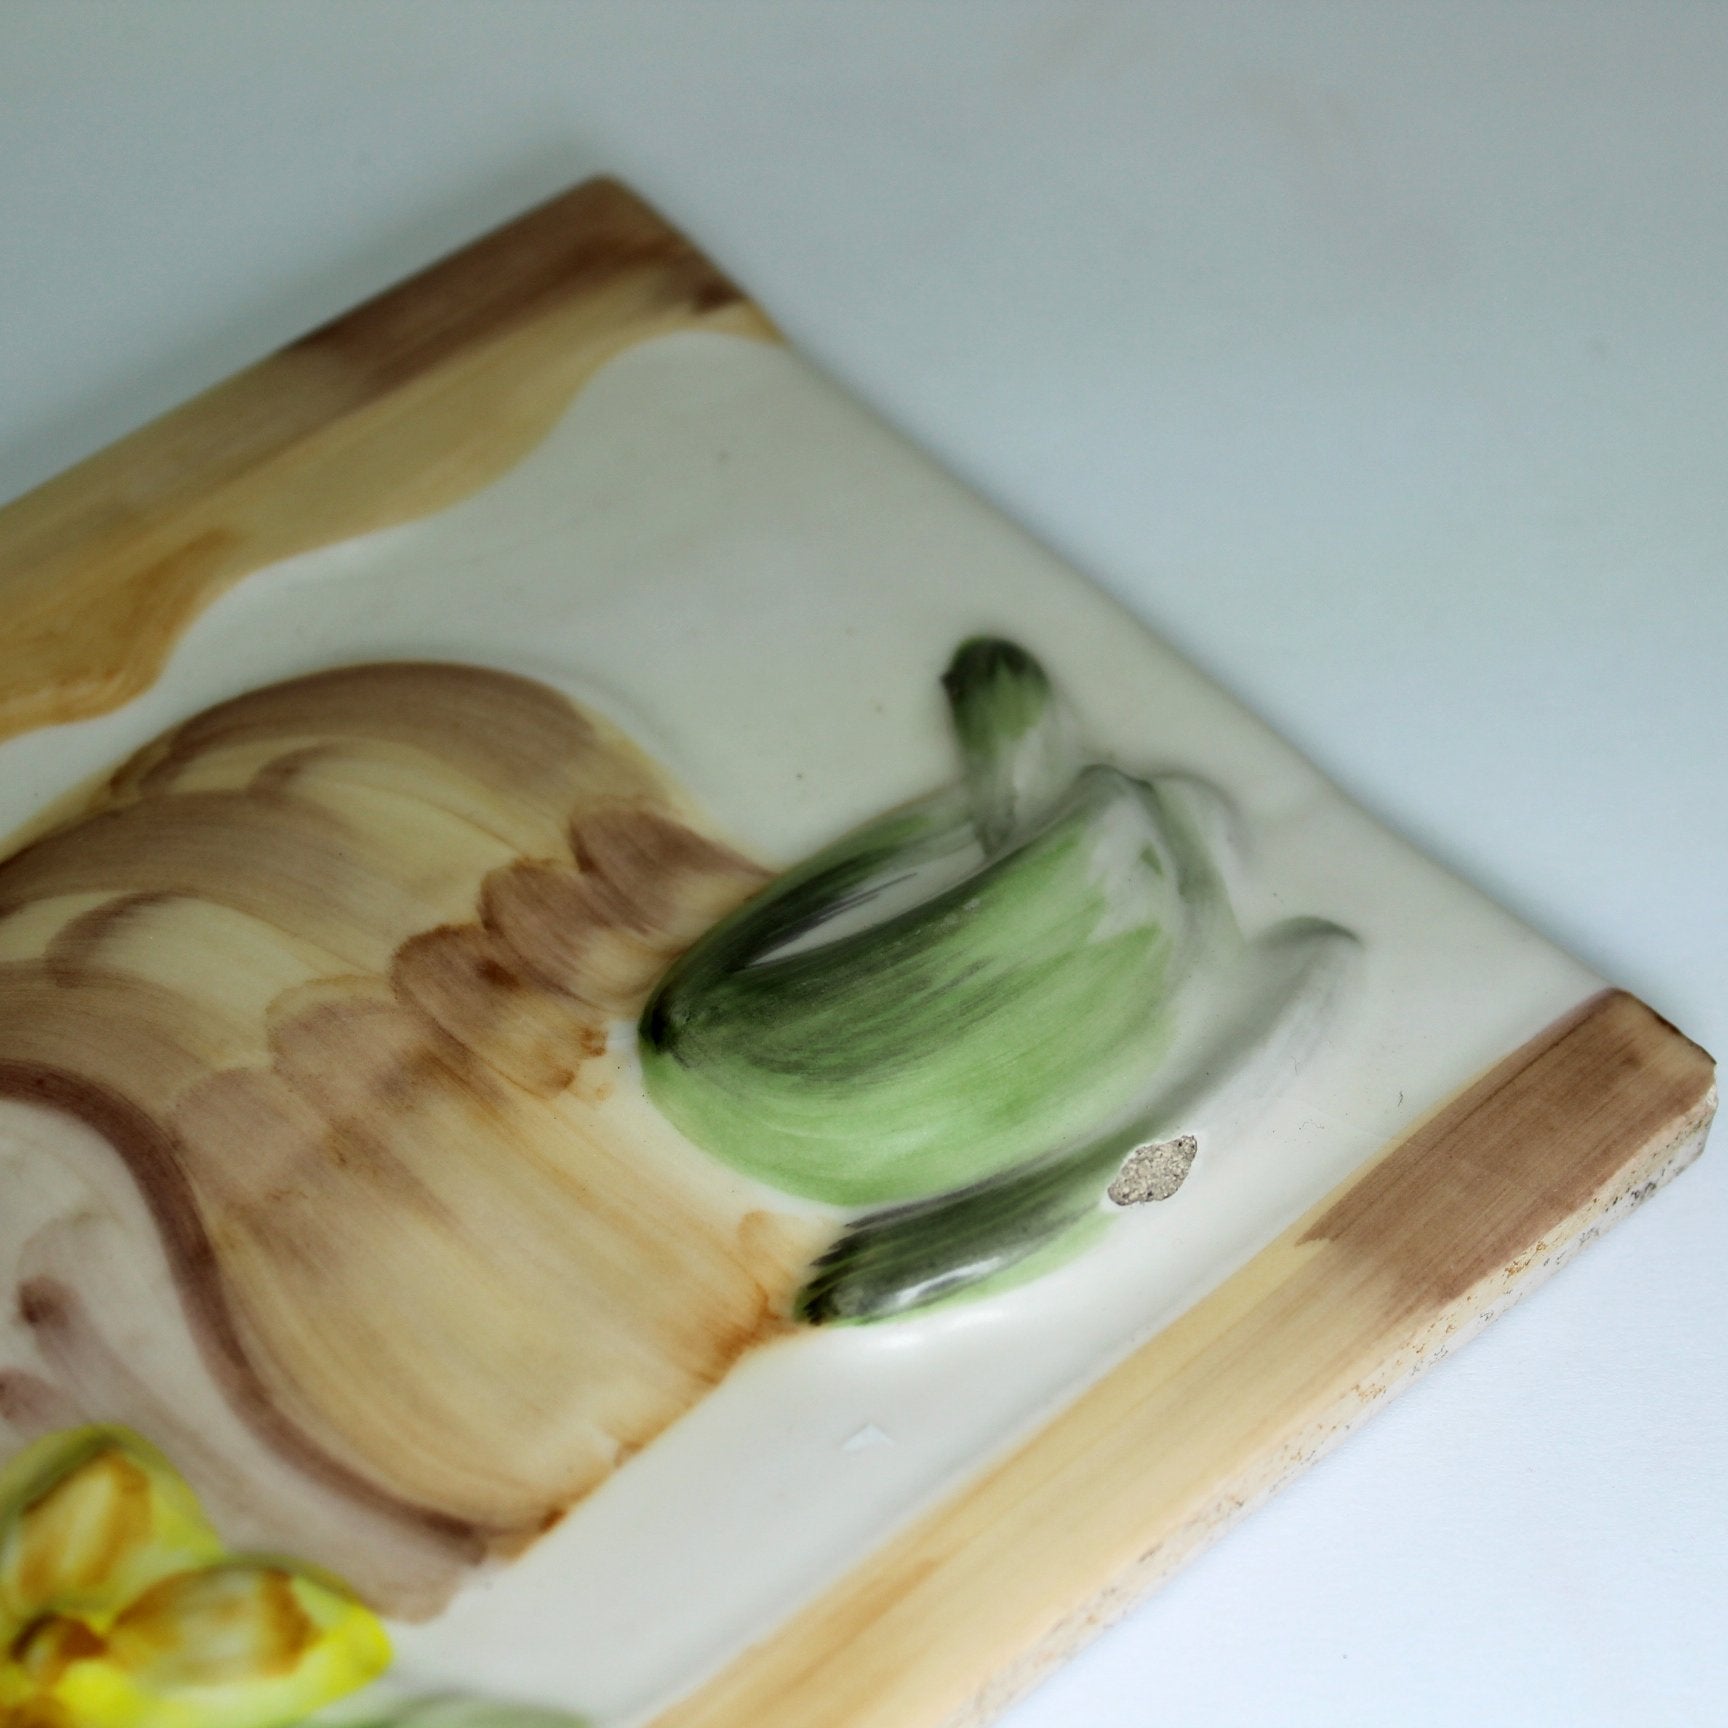 Pair Decorative Tiles DIY Project Kitchen Decor Fruit Bread Miel closeup flaw